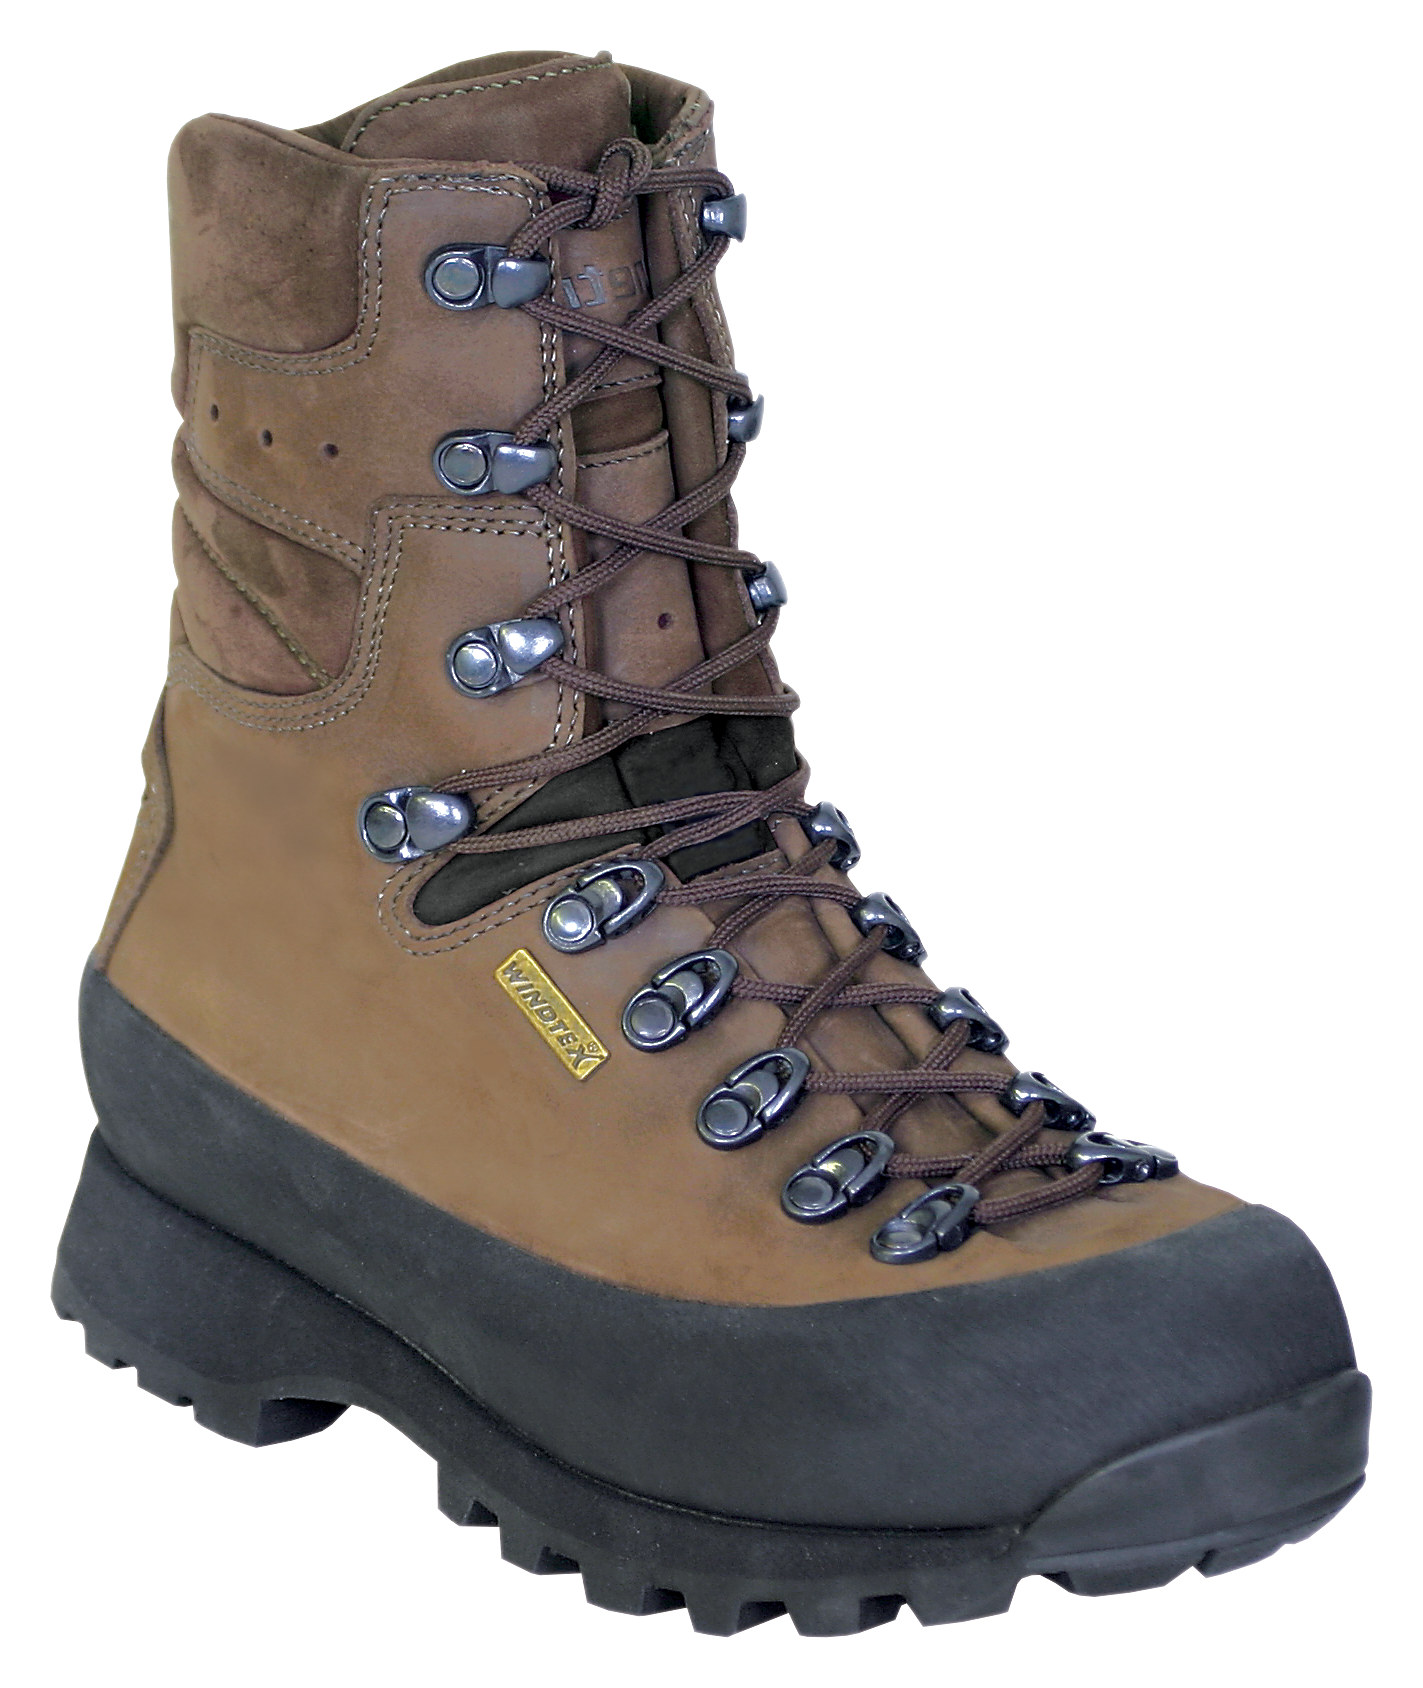 Kenetrek Hiker Waterproof Hiking Boots for Ladies - Brown -  7M